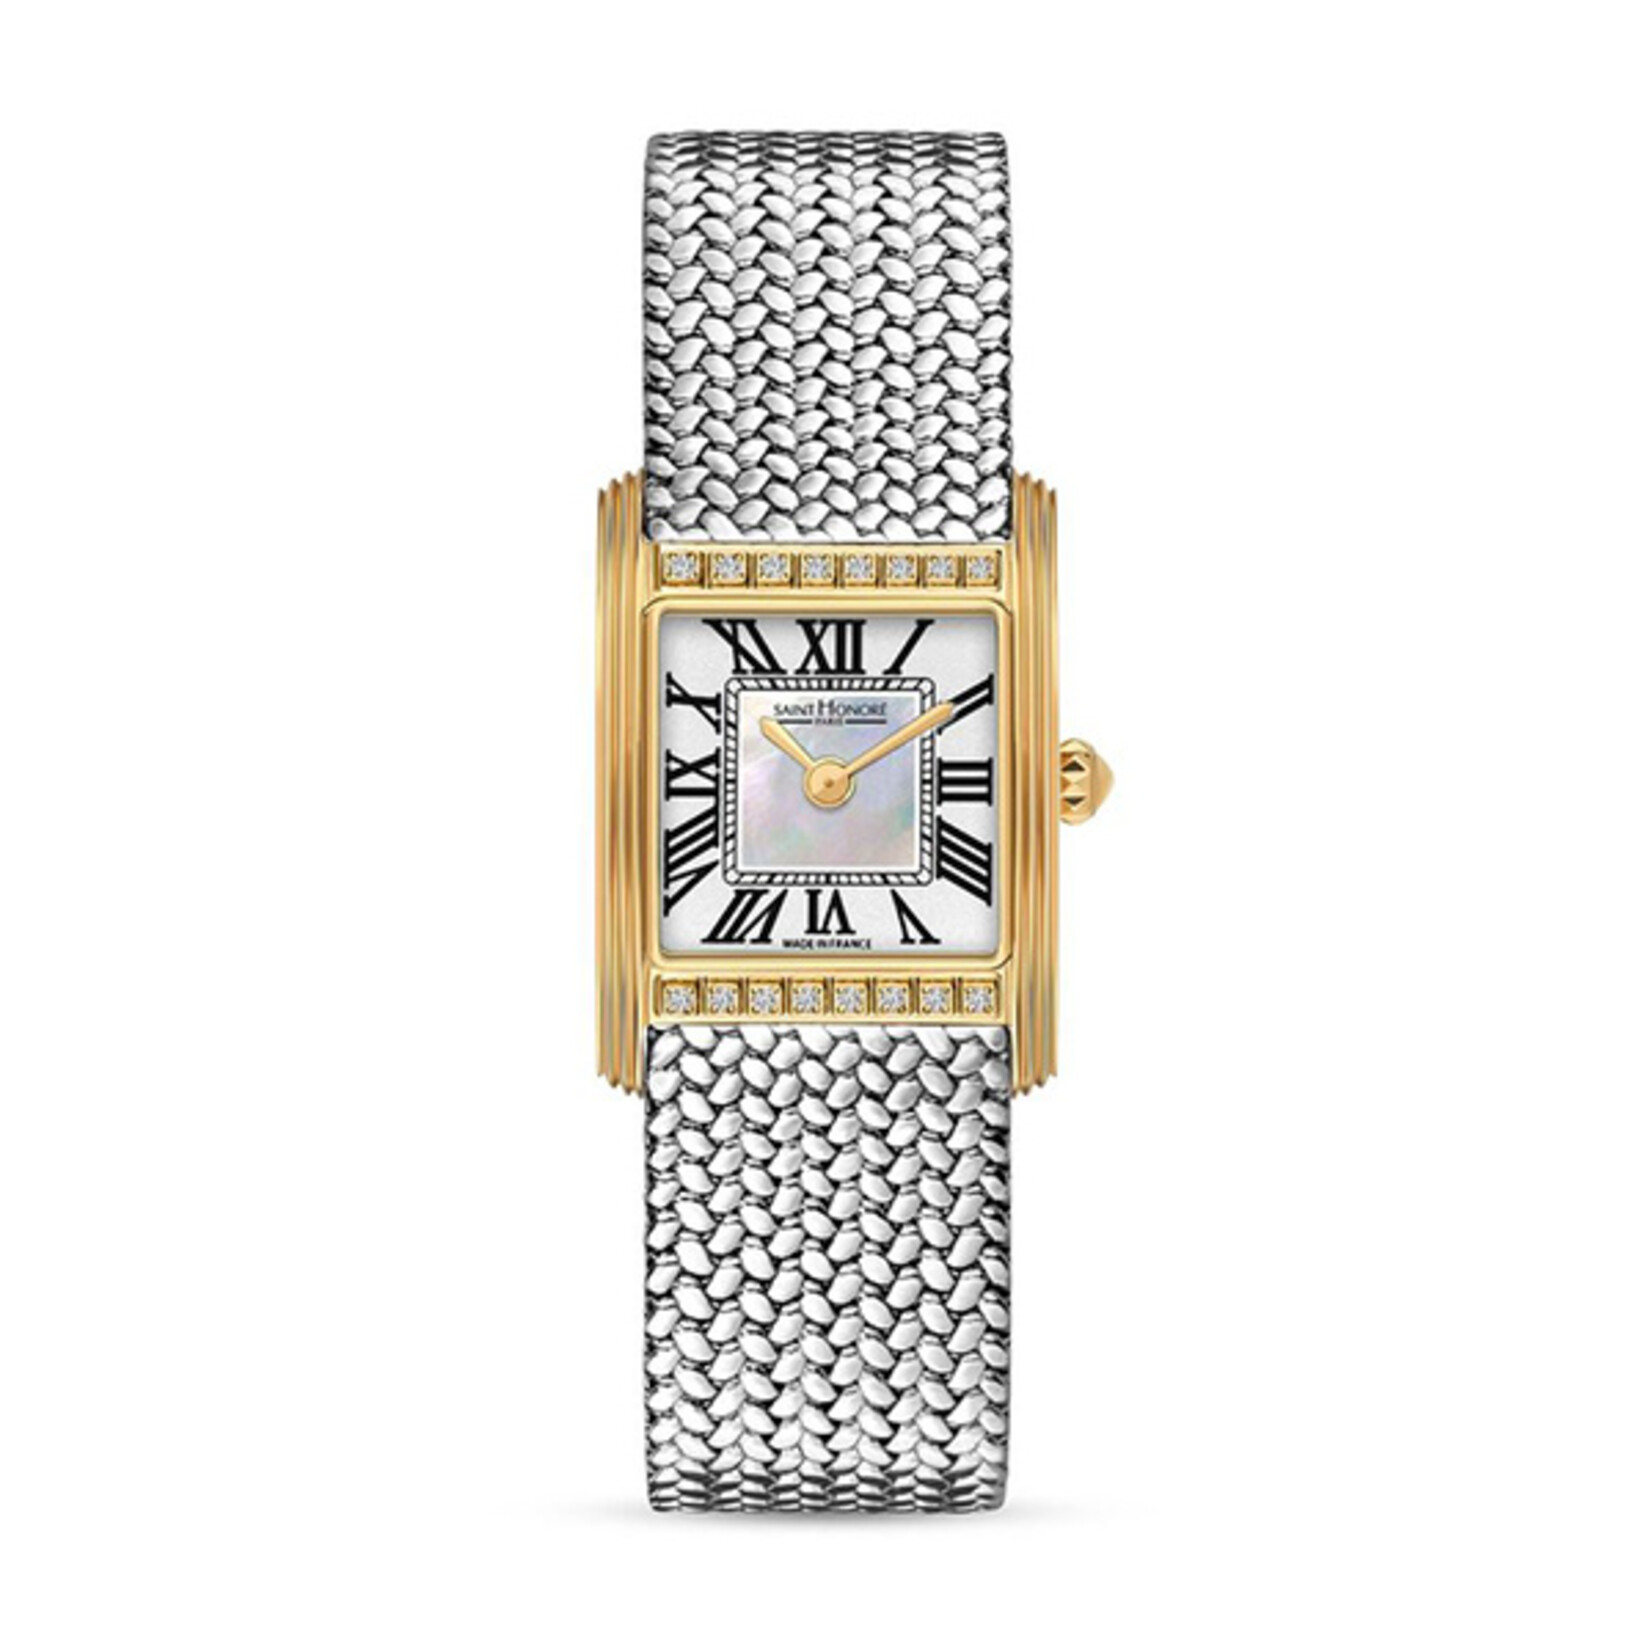 Saint Honoré Saint honoré palais royal mini horloge pr710155 31yr diamond